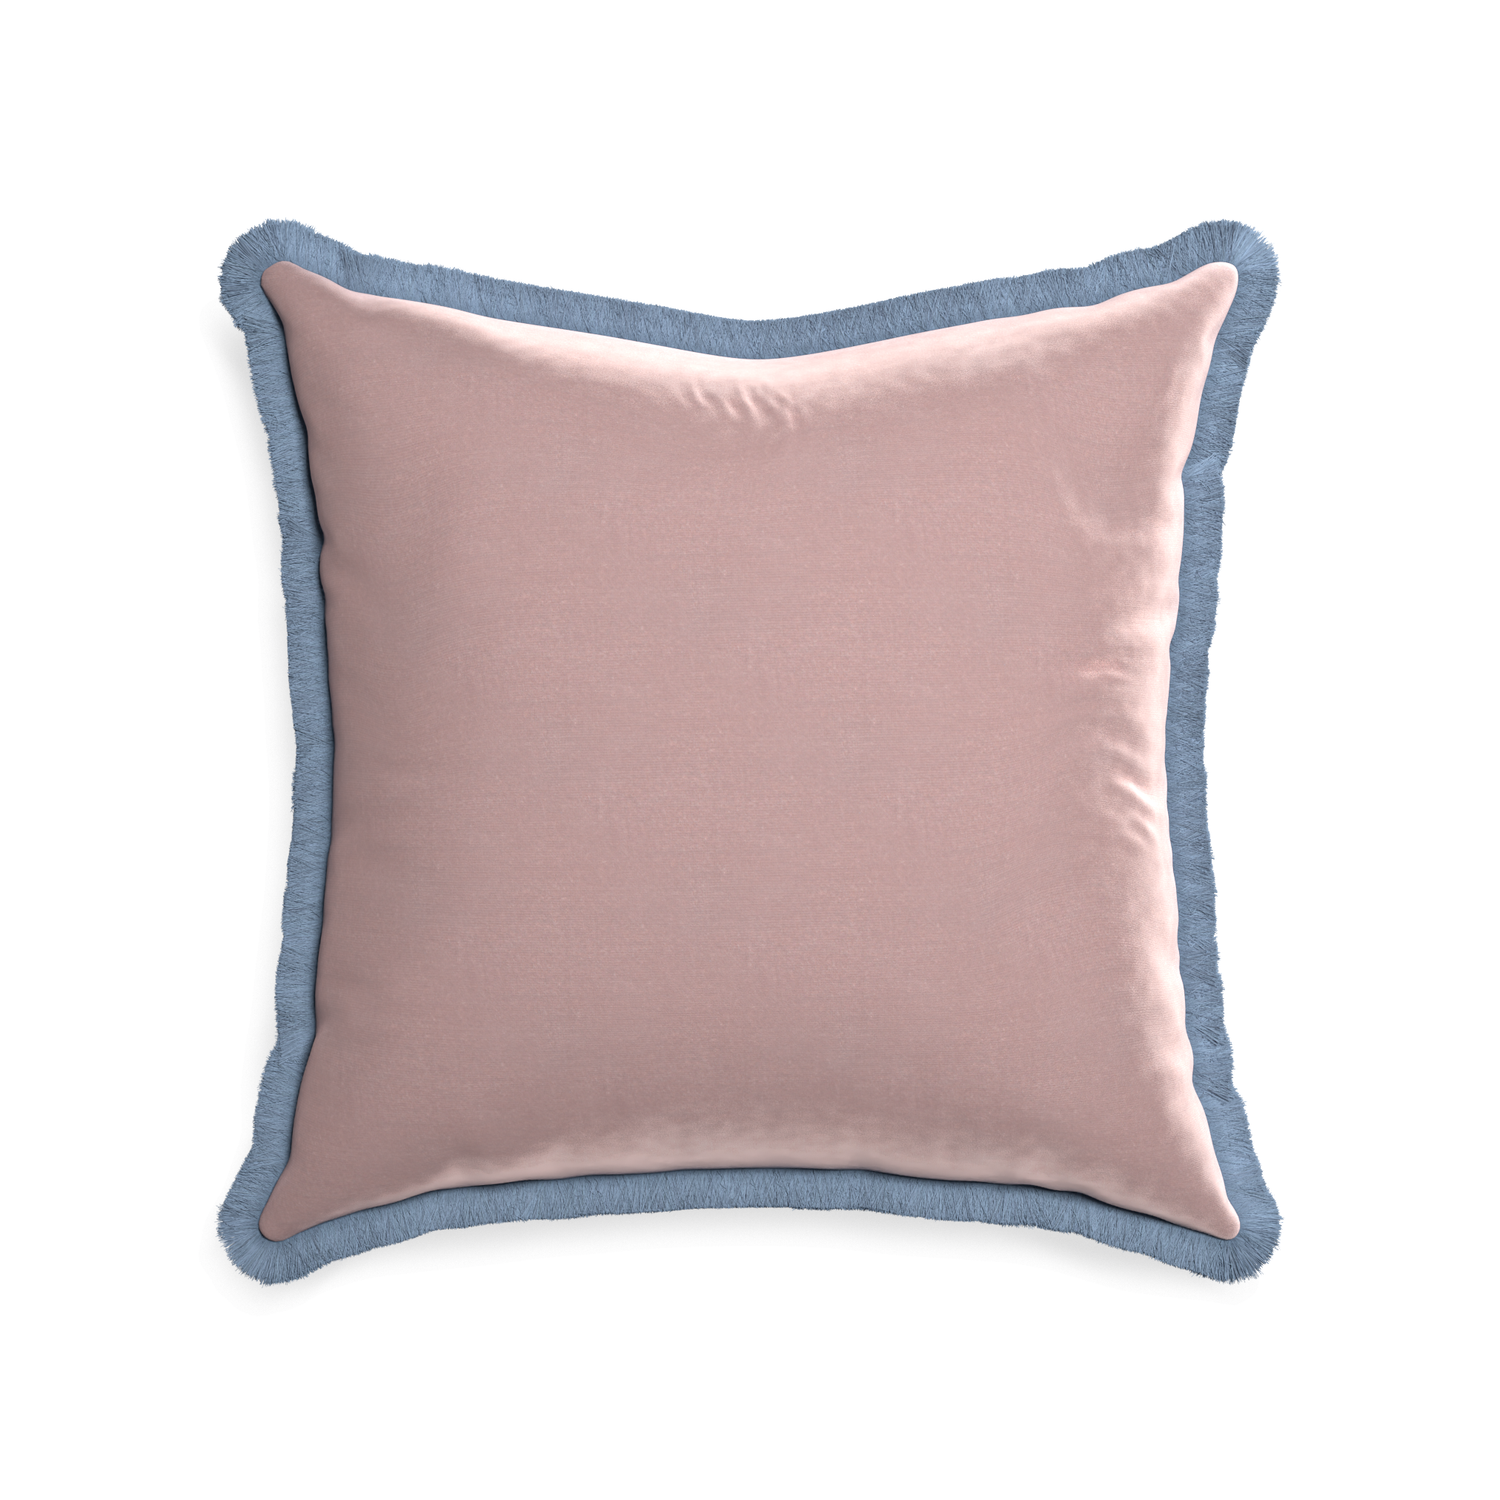 square mauve velvet pillow with sky blue fringe